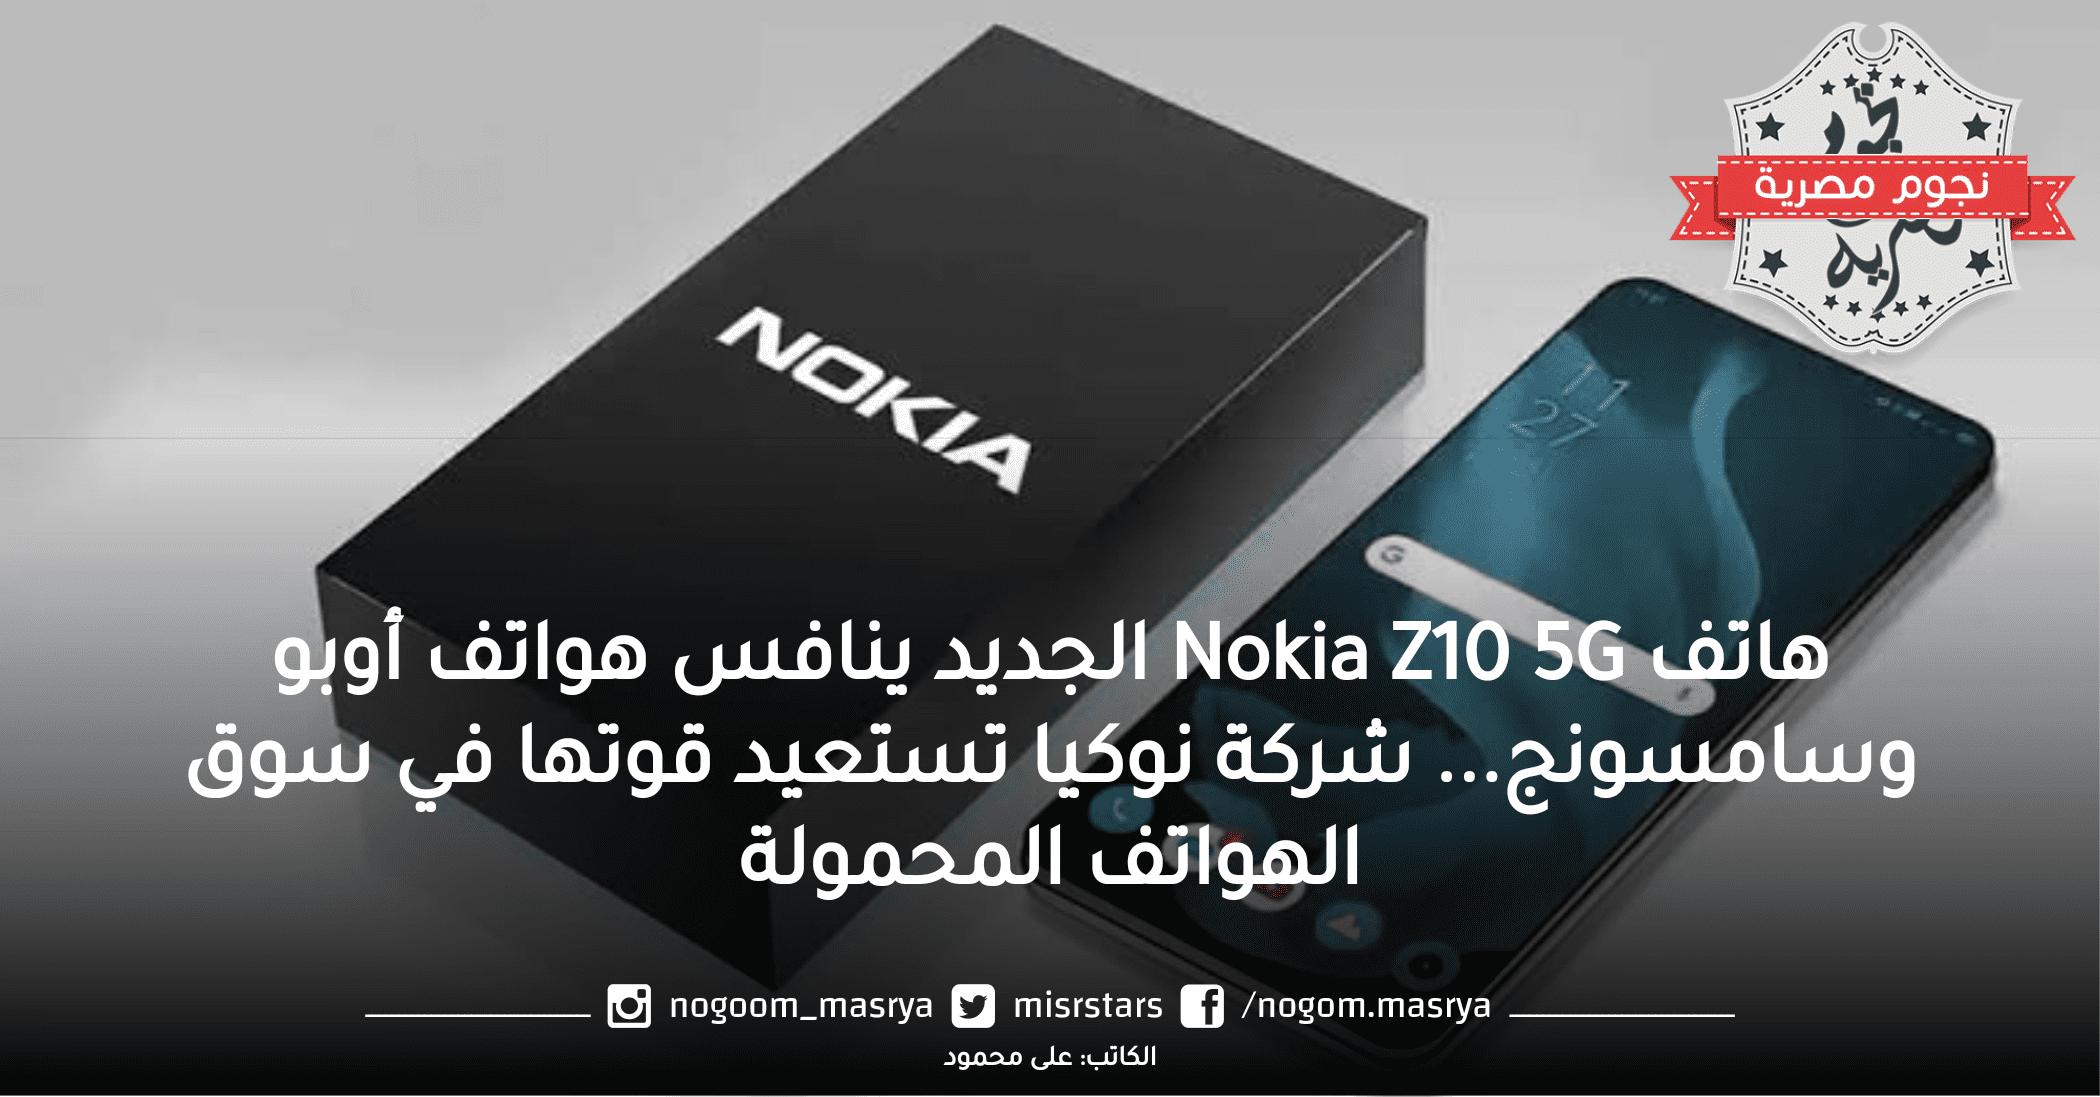 هاتف Nokia Z10 5G الجديد ينافس هواتف أوبو وسامسونج… شركة نوكيا تستعيد قوتها في سوق الهواتف المحمولة